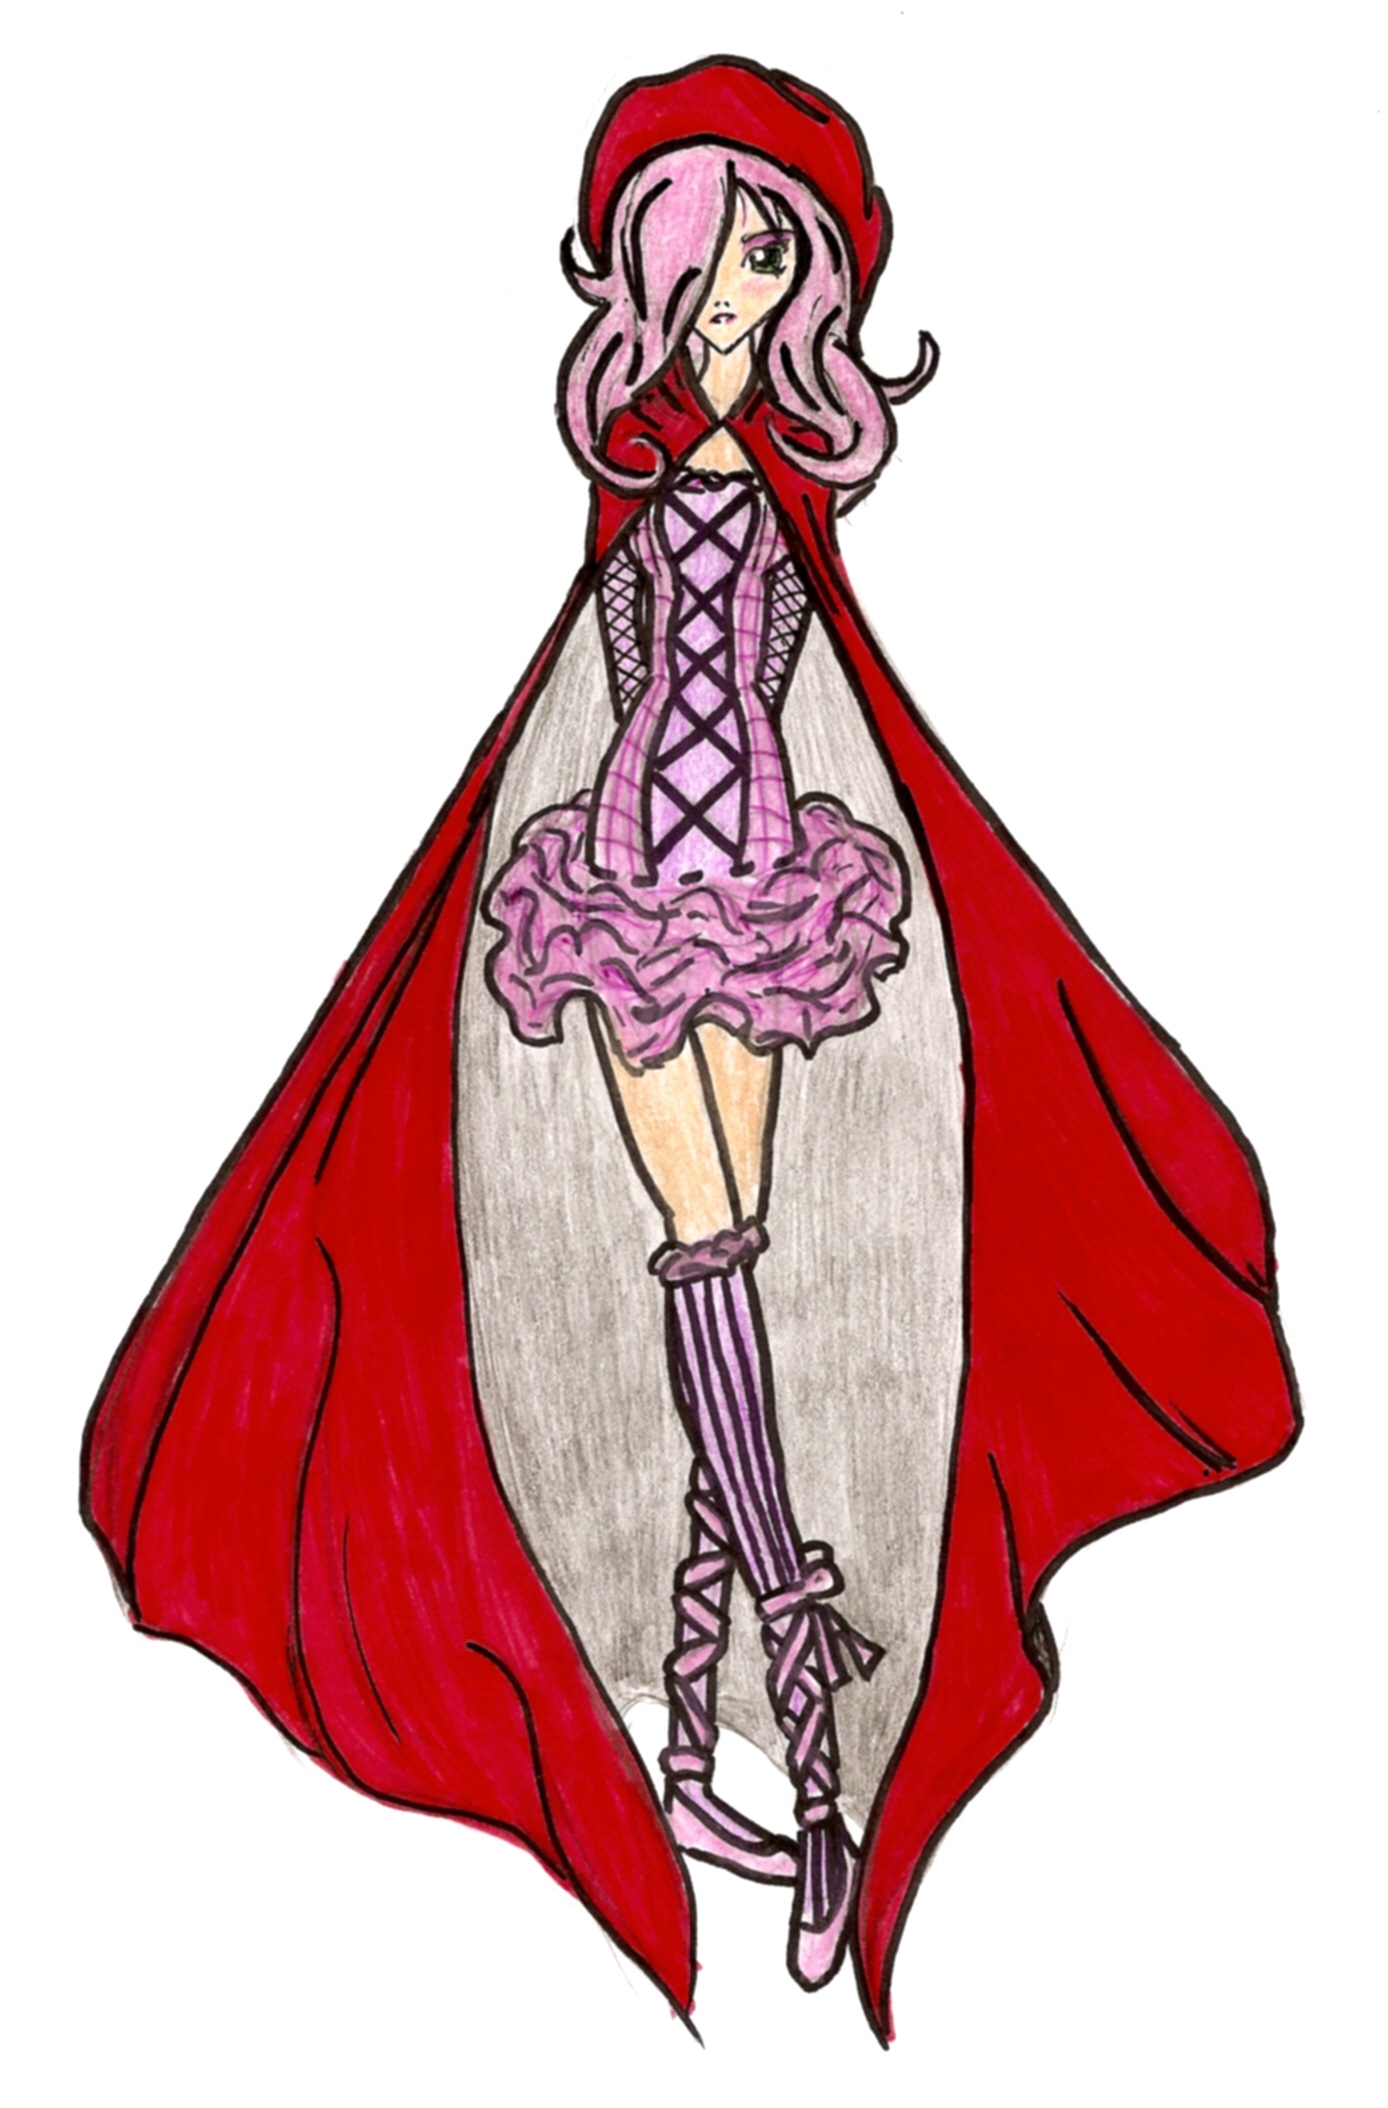 Sakura Red Riding Hood by Vesper